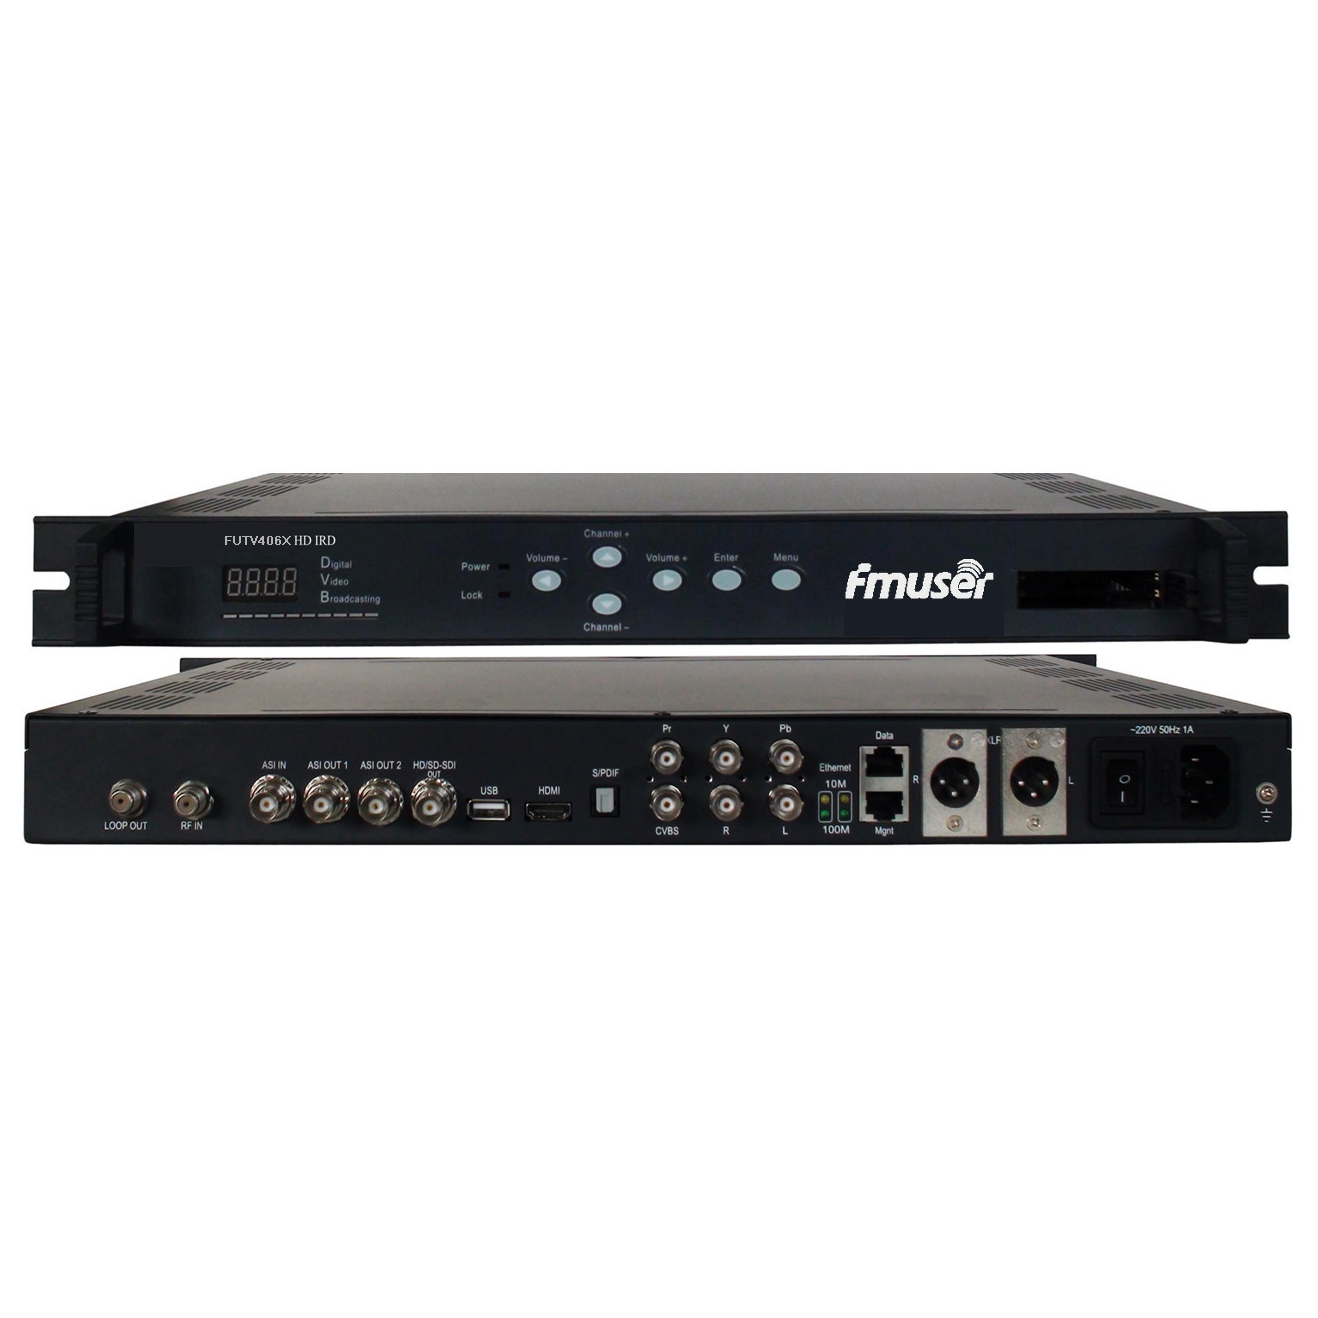 FMUSER FUTV406X HD IRD (1 DVB-S / S2 / T / C, อินพุต ISDB-T RF, 1 ASI IP ใน, ASI 2 1 IP เอาท์พุท, HDMI SDI CVBS XLR ออก) กับ MUX และท่านตลอดเวลา